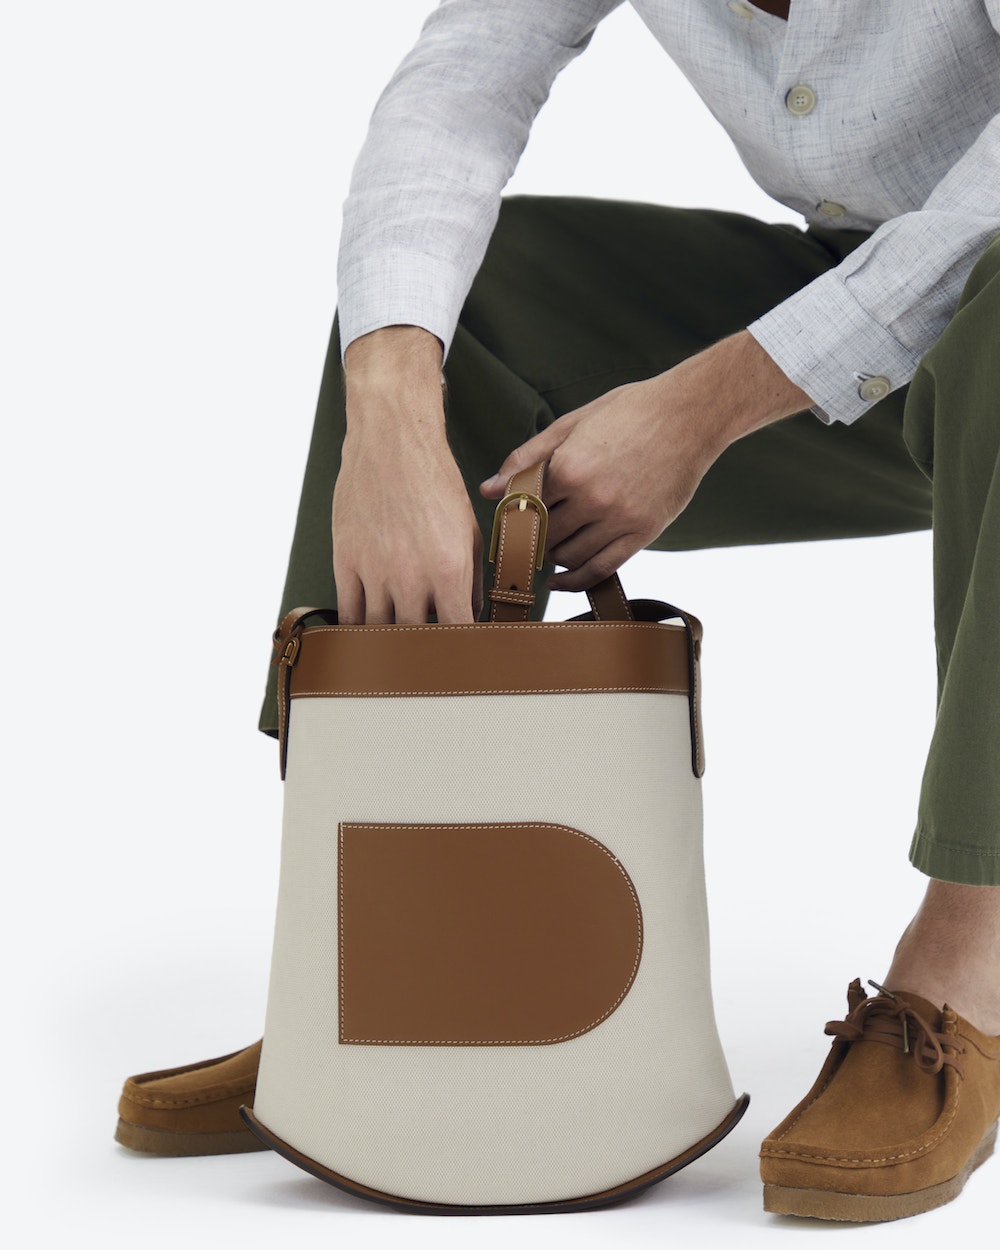 Delvaux Lingot Canvas Shoulder Bag in Brown